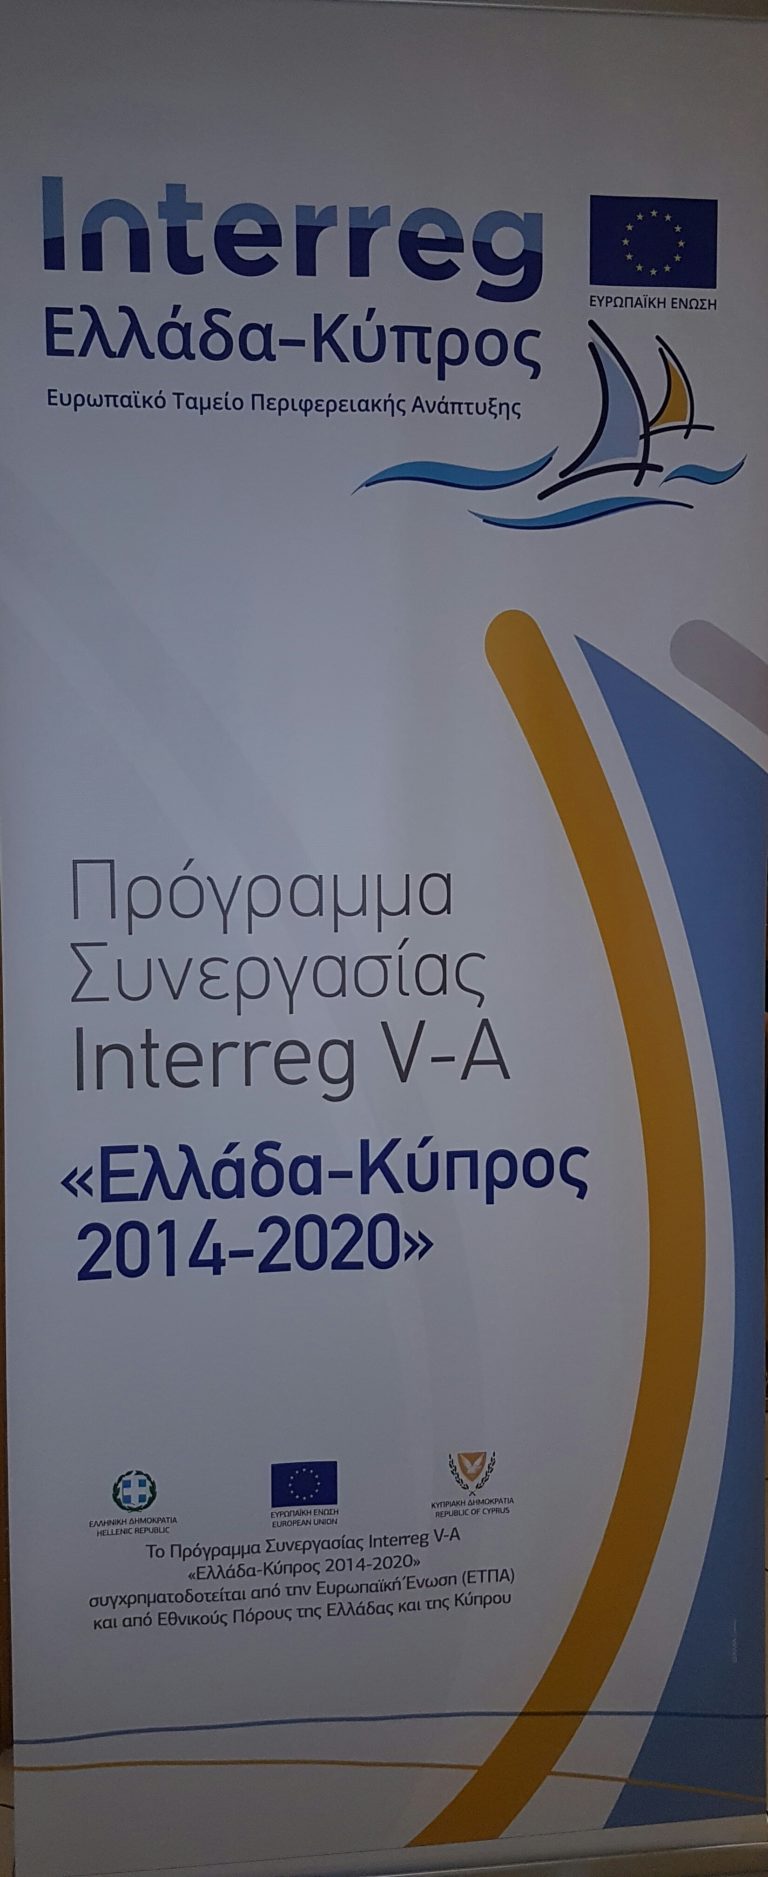 Έγκριση προγραμμάτων Interreg “Ελλάδα Κύπρος 2014-2020”